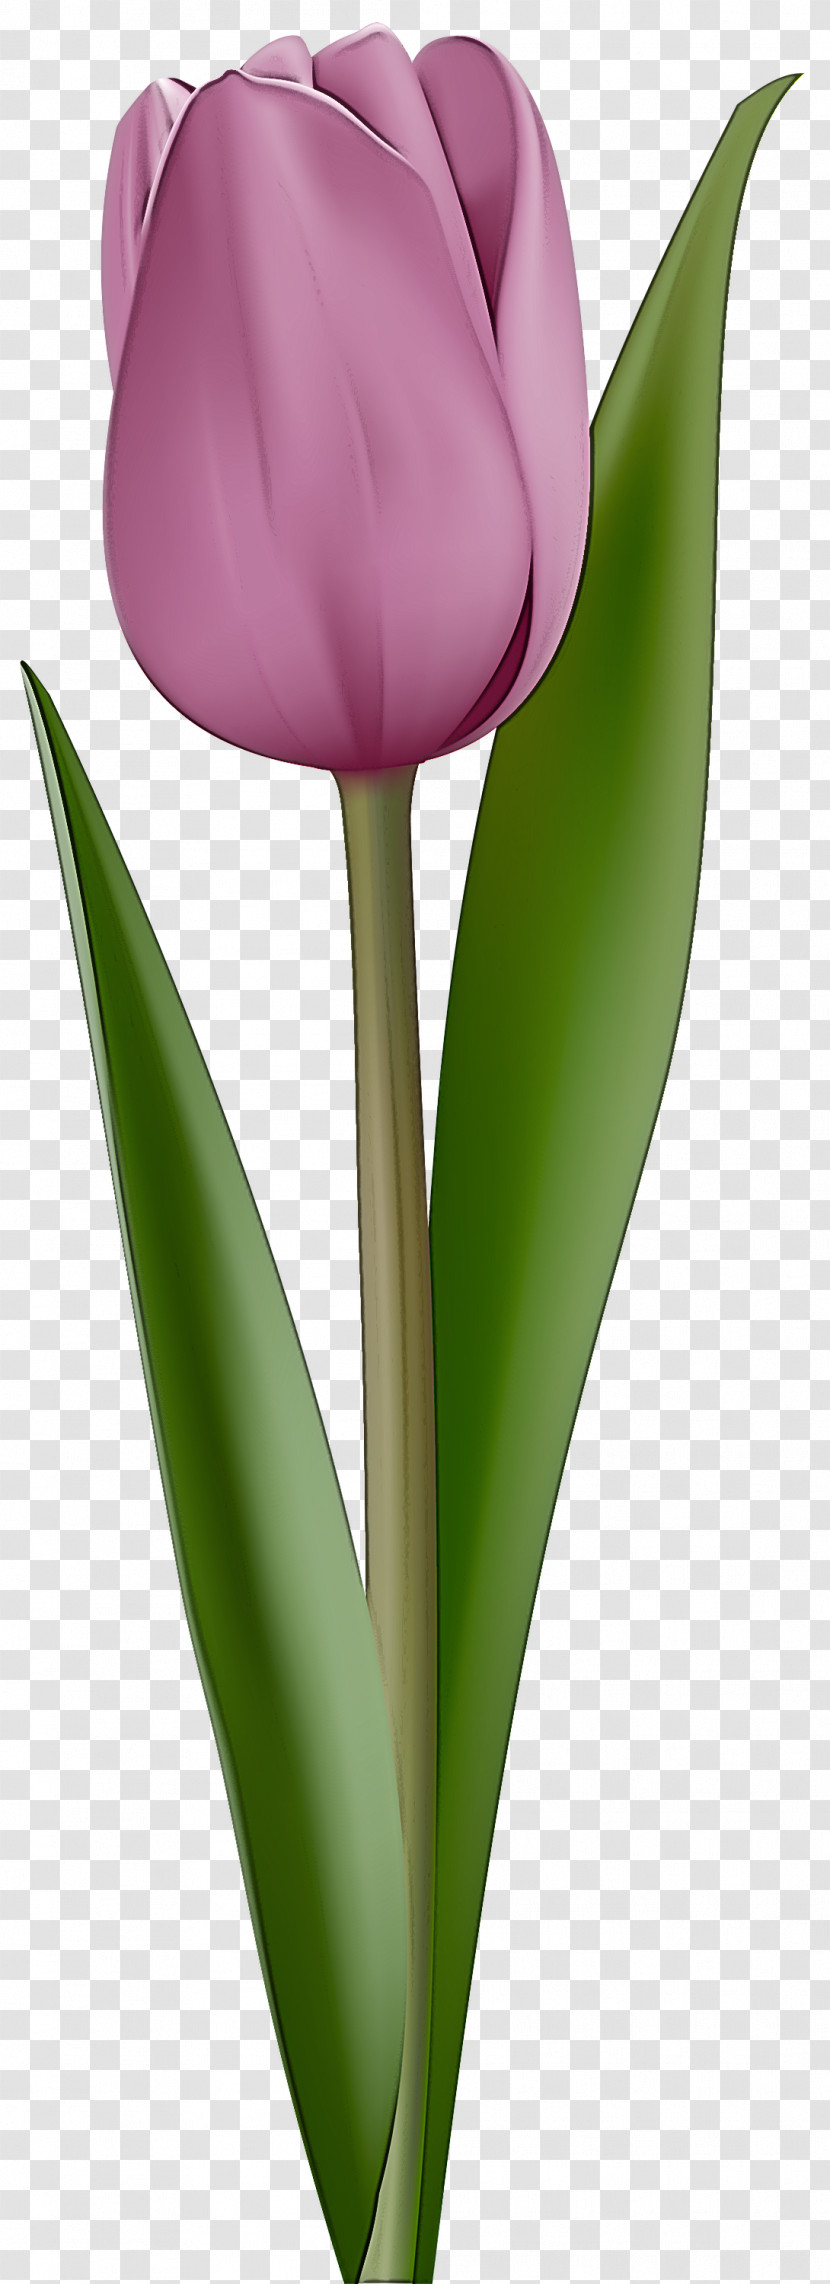 Tulip Flower Plant Petal Leaf Transparent PNG